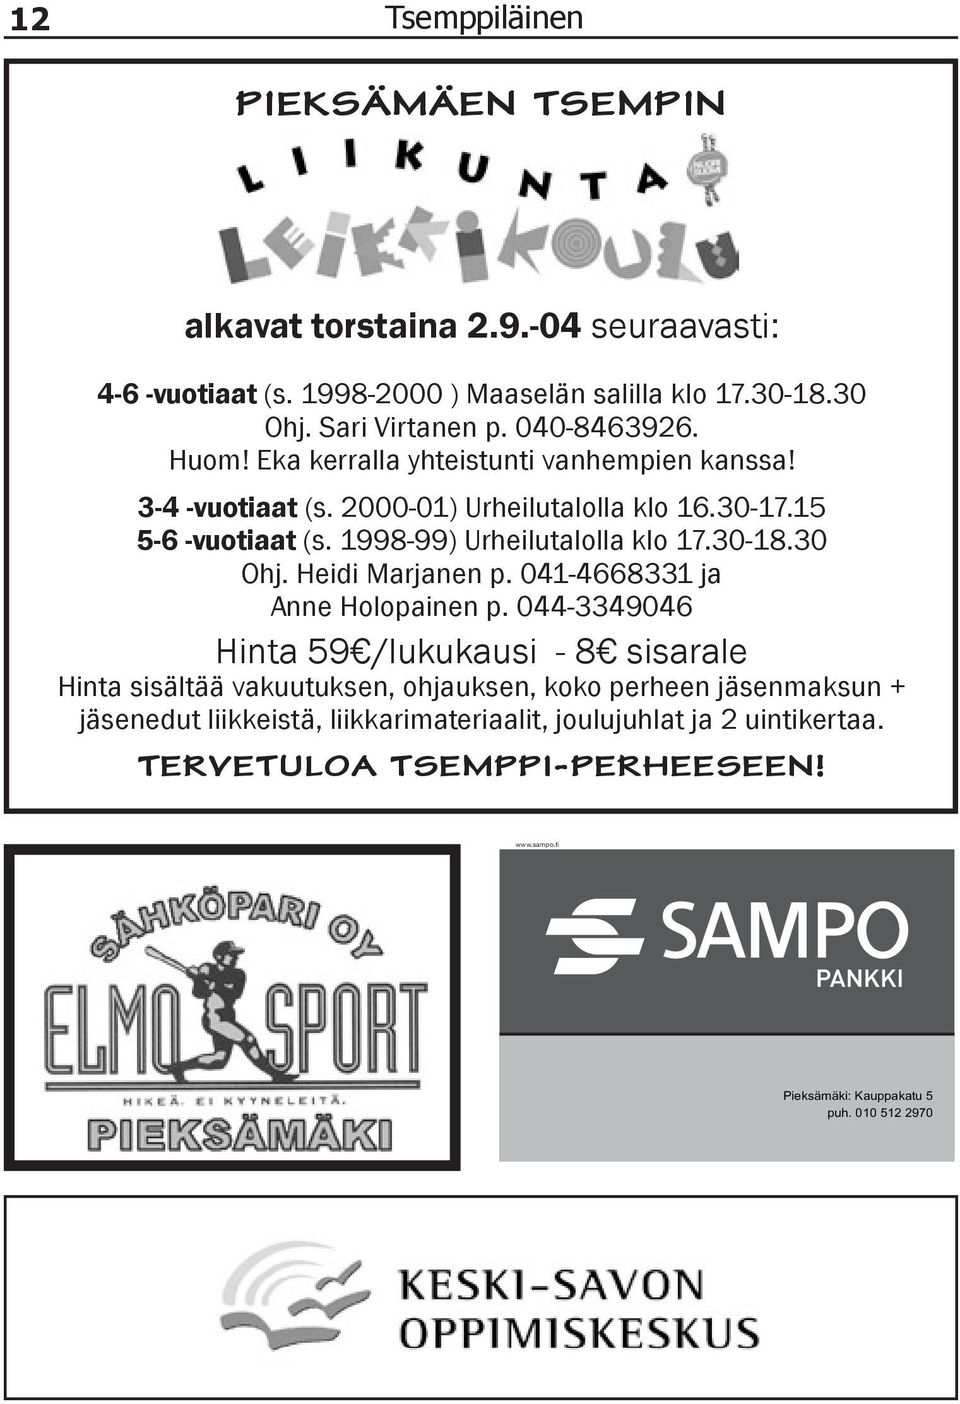 1998-99) Urheilutalolla klo 17.30-18.30 Ohj. Heidi Marjanen p. 041-4668331 ja Anne Holopainen p.